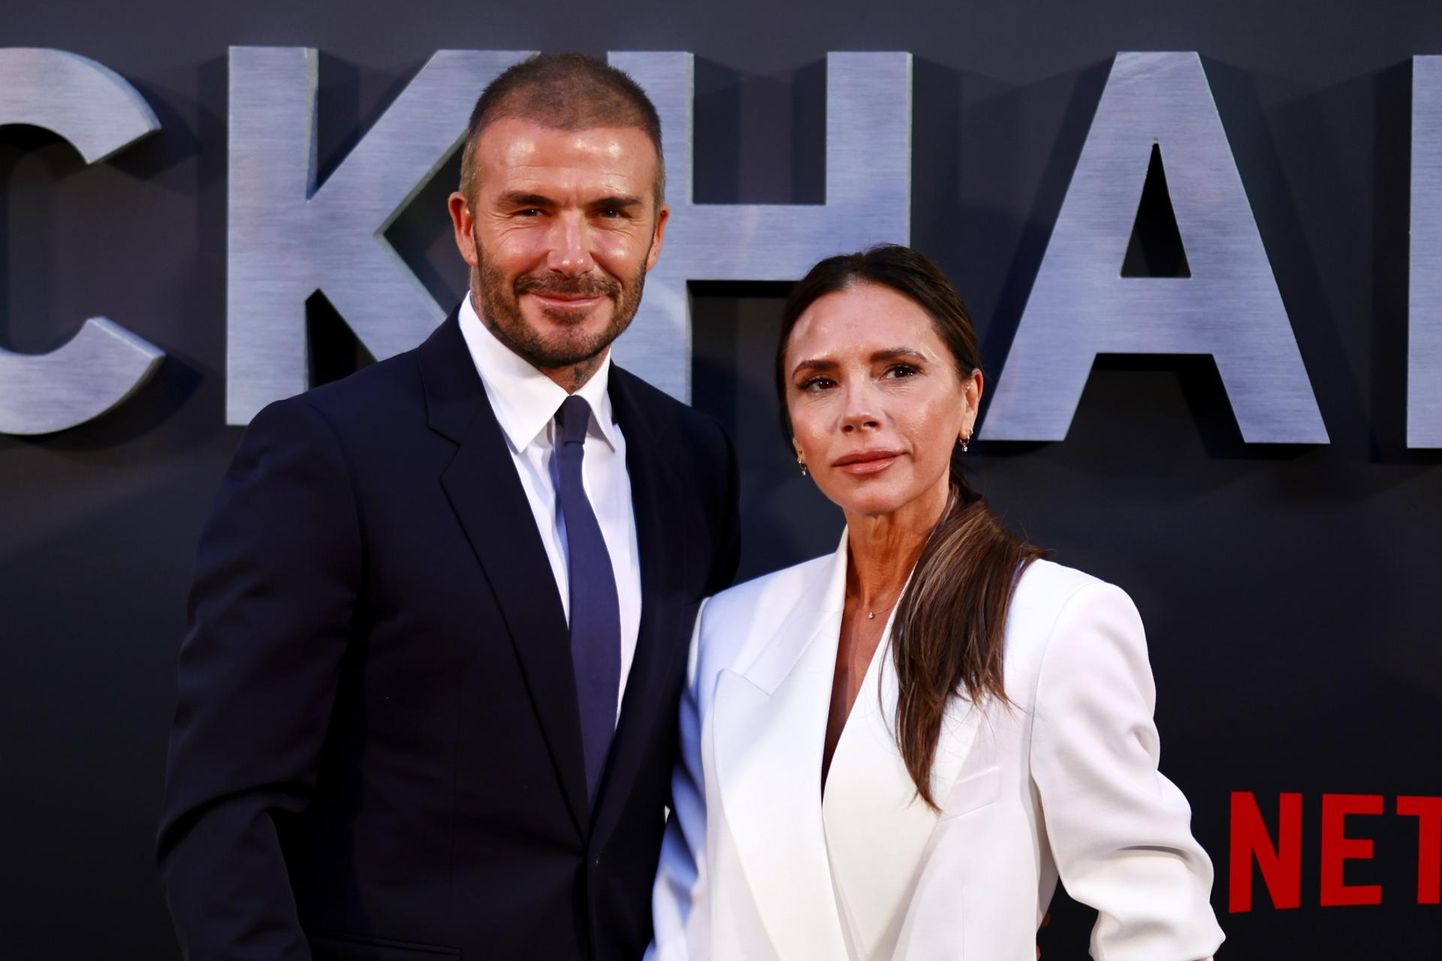 David ja Victoria Beckham dokumentaalsarja "Beckham" esilinastusel